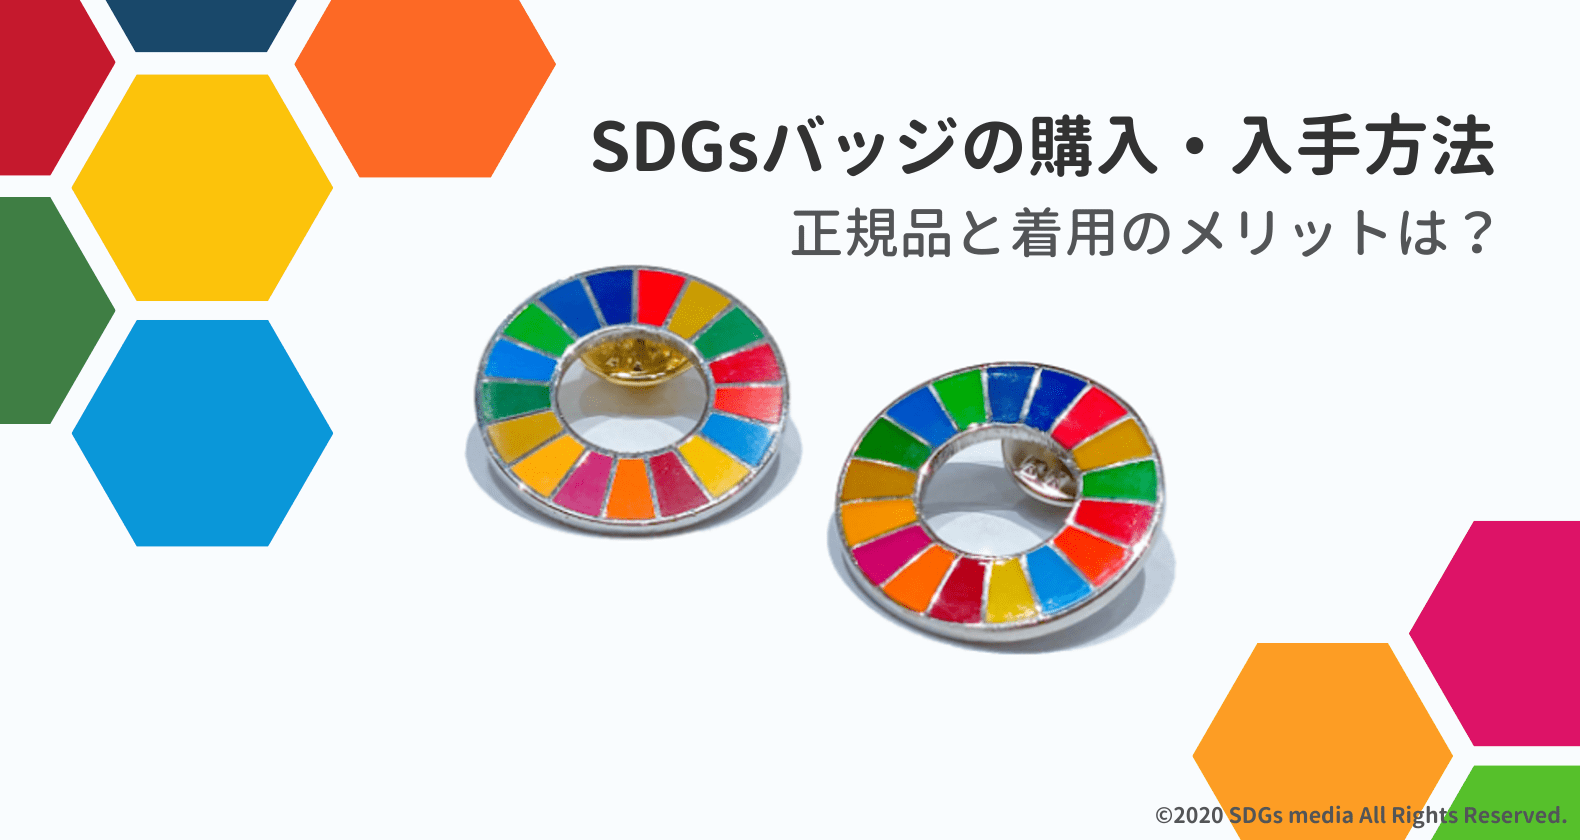 SDGsバッジの購入方法｜つける意味と正規品の見分け方を解説